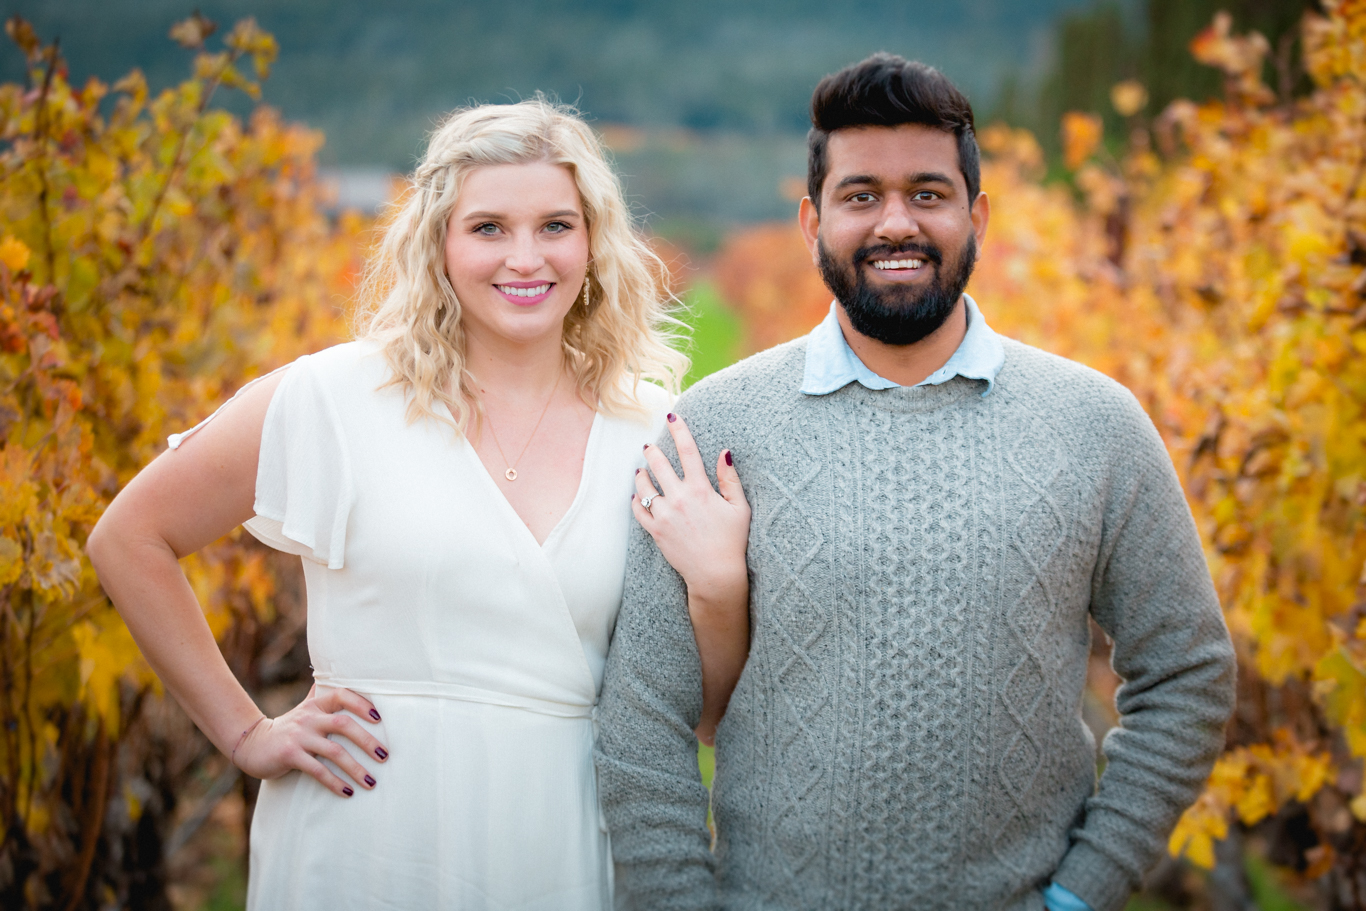 2018.12.03_Ashir-and-Emily-Engagement-Photography-@heymikefrancis-napa-valley-wedding-sacremento-california-heyfrancis-mikefrancis-7999.jpg